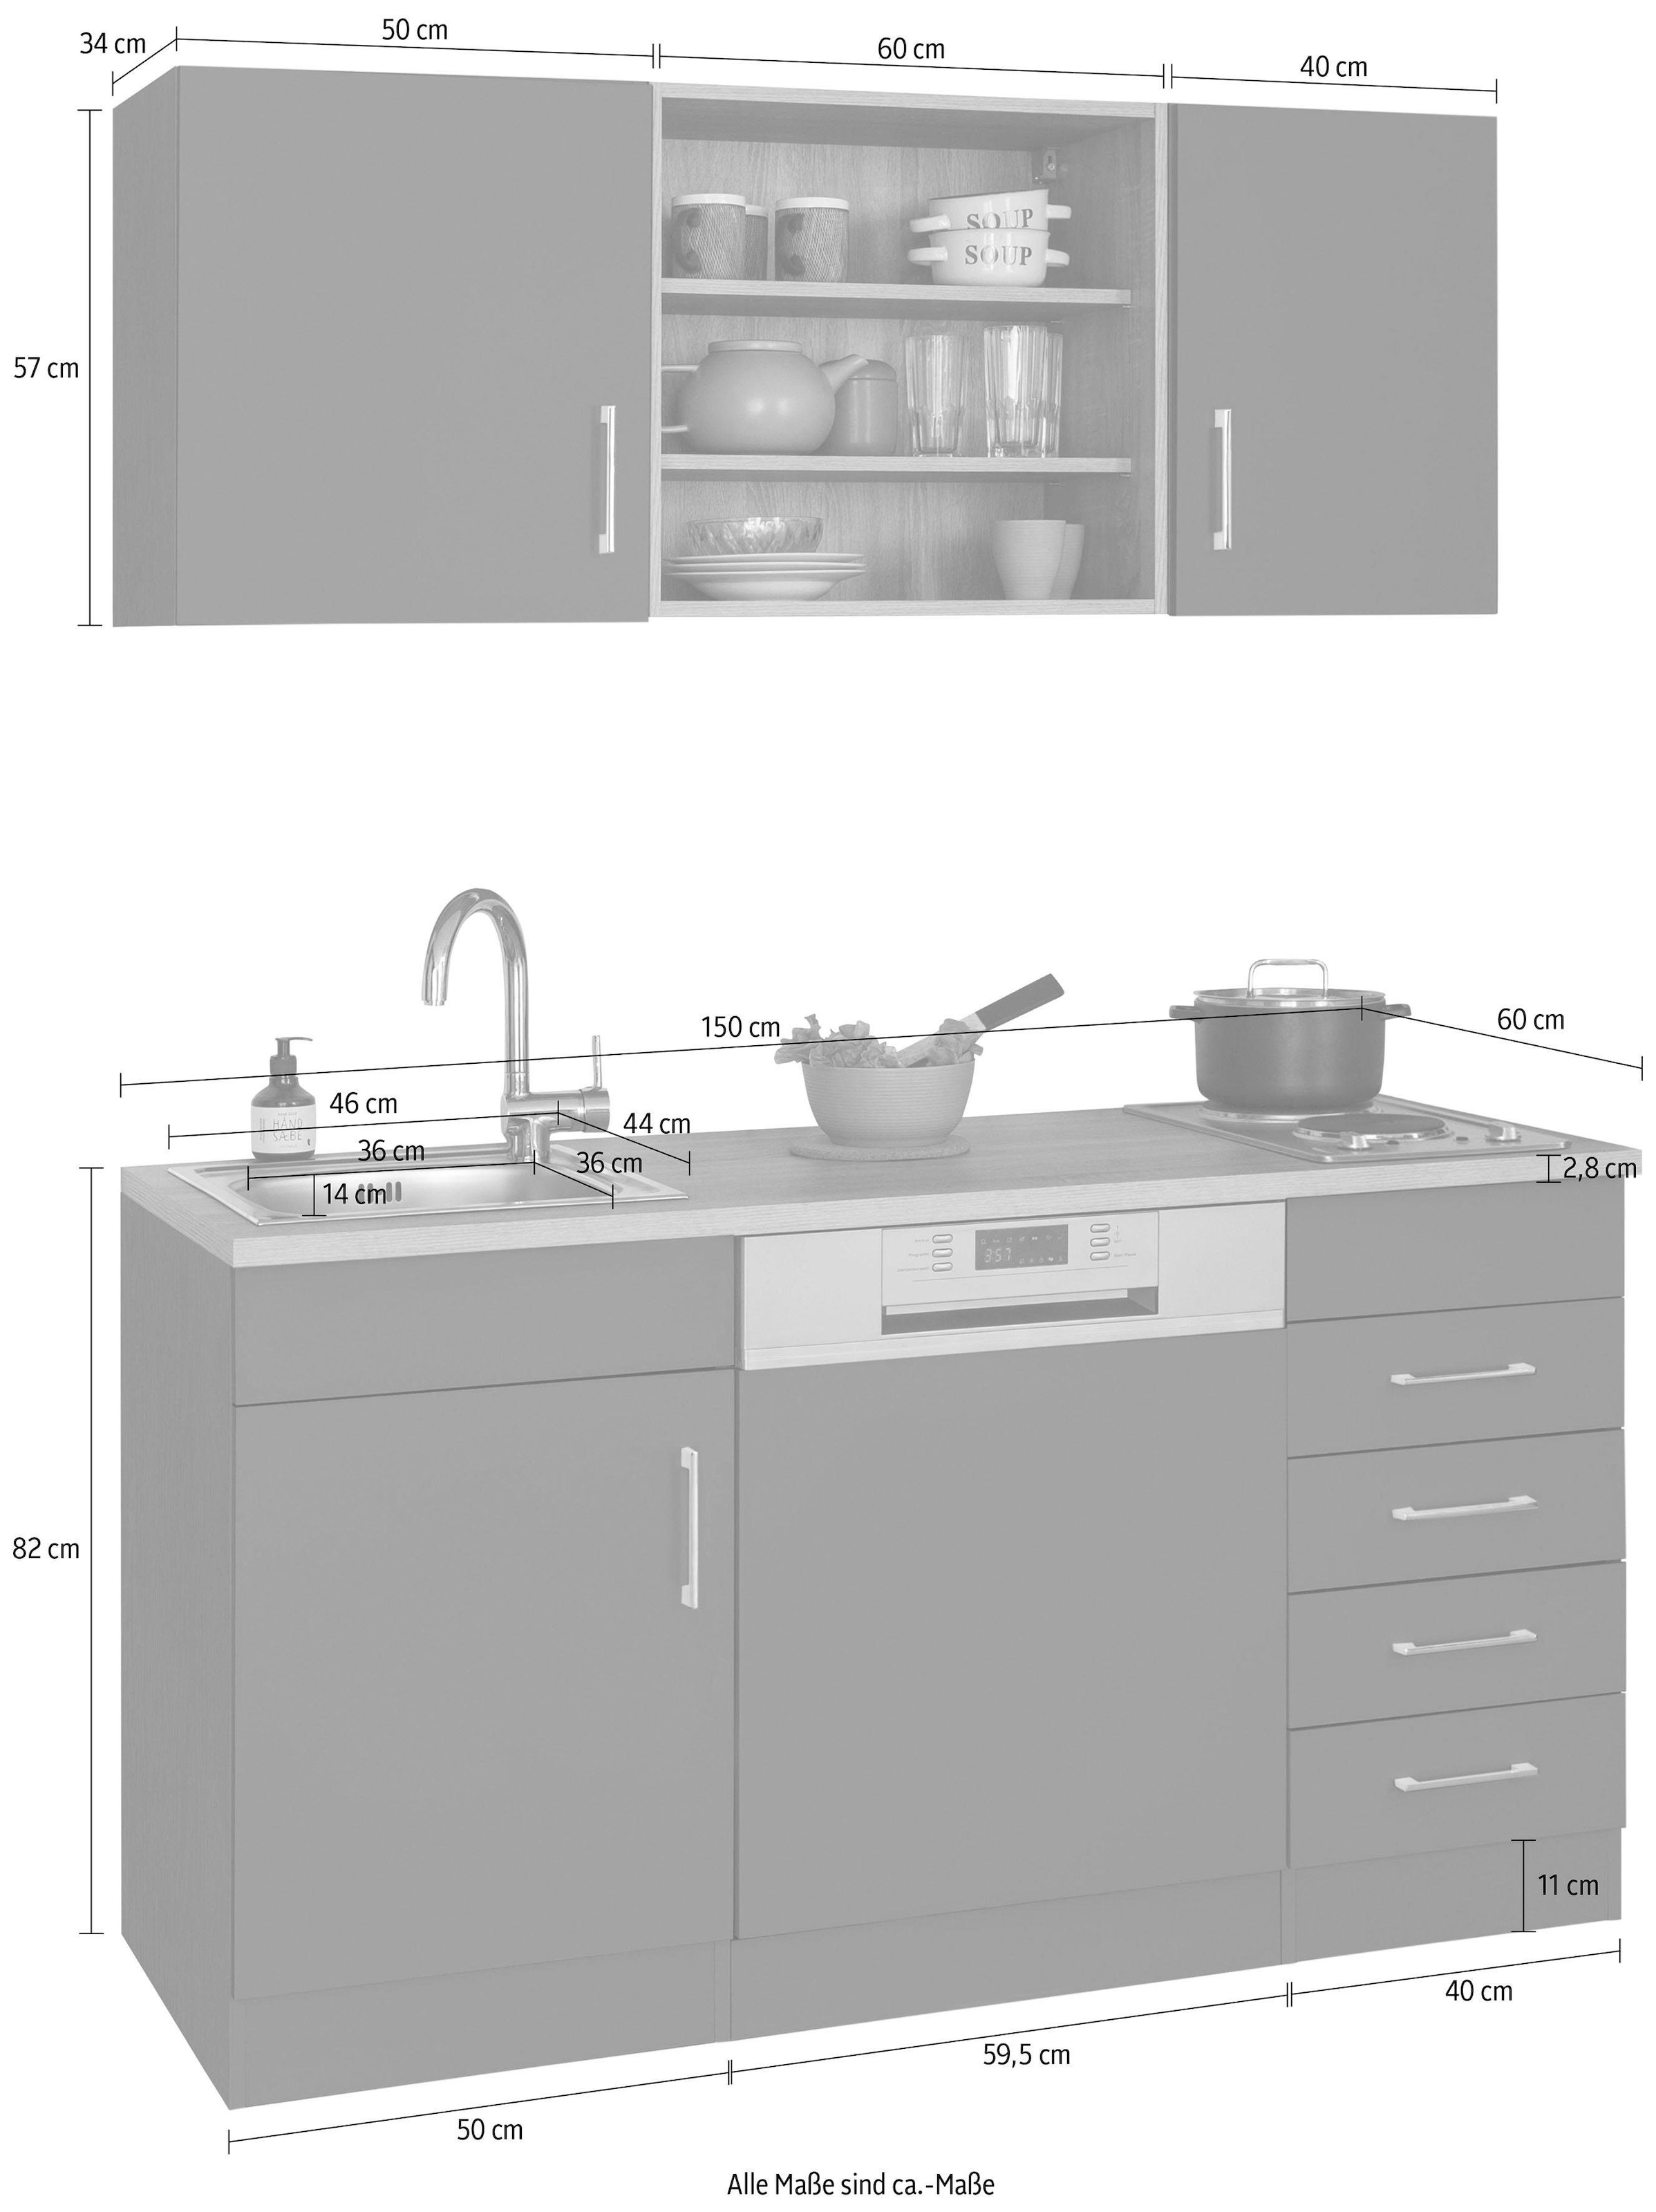 HELD MÖBEL Küche »Mali«, Breite 150 cm, mit E-Geräten